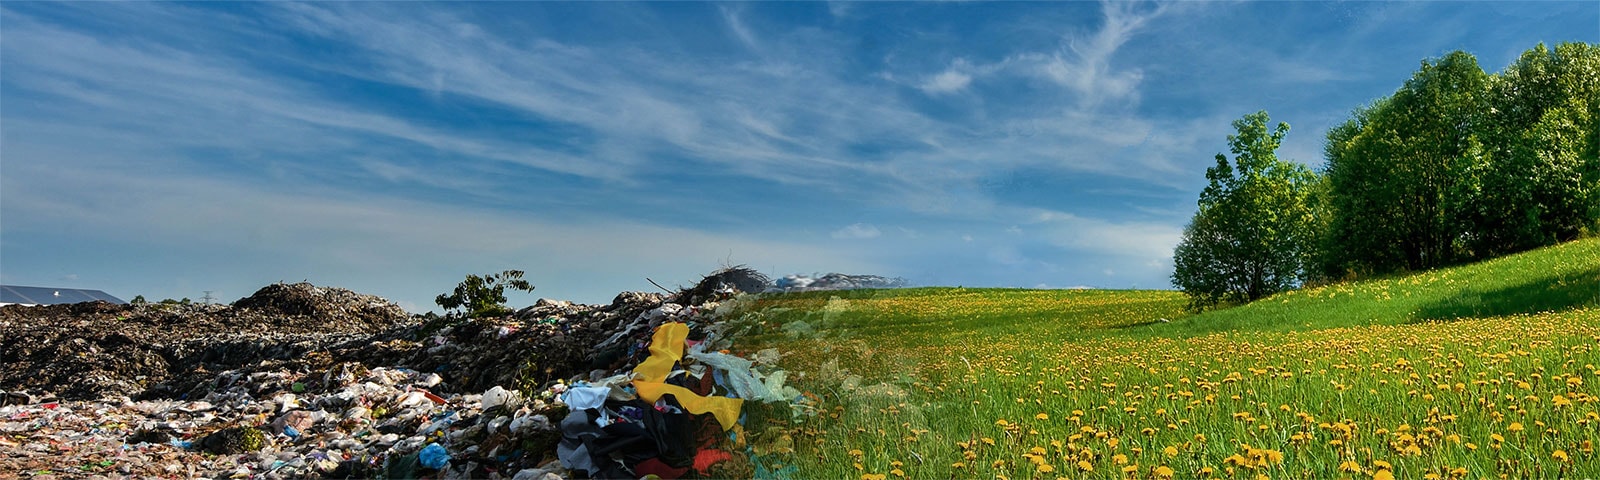 Bild av två kontrasterande scener: textil deponi och fält med blommor.